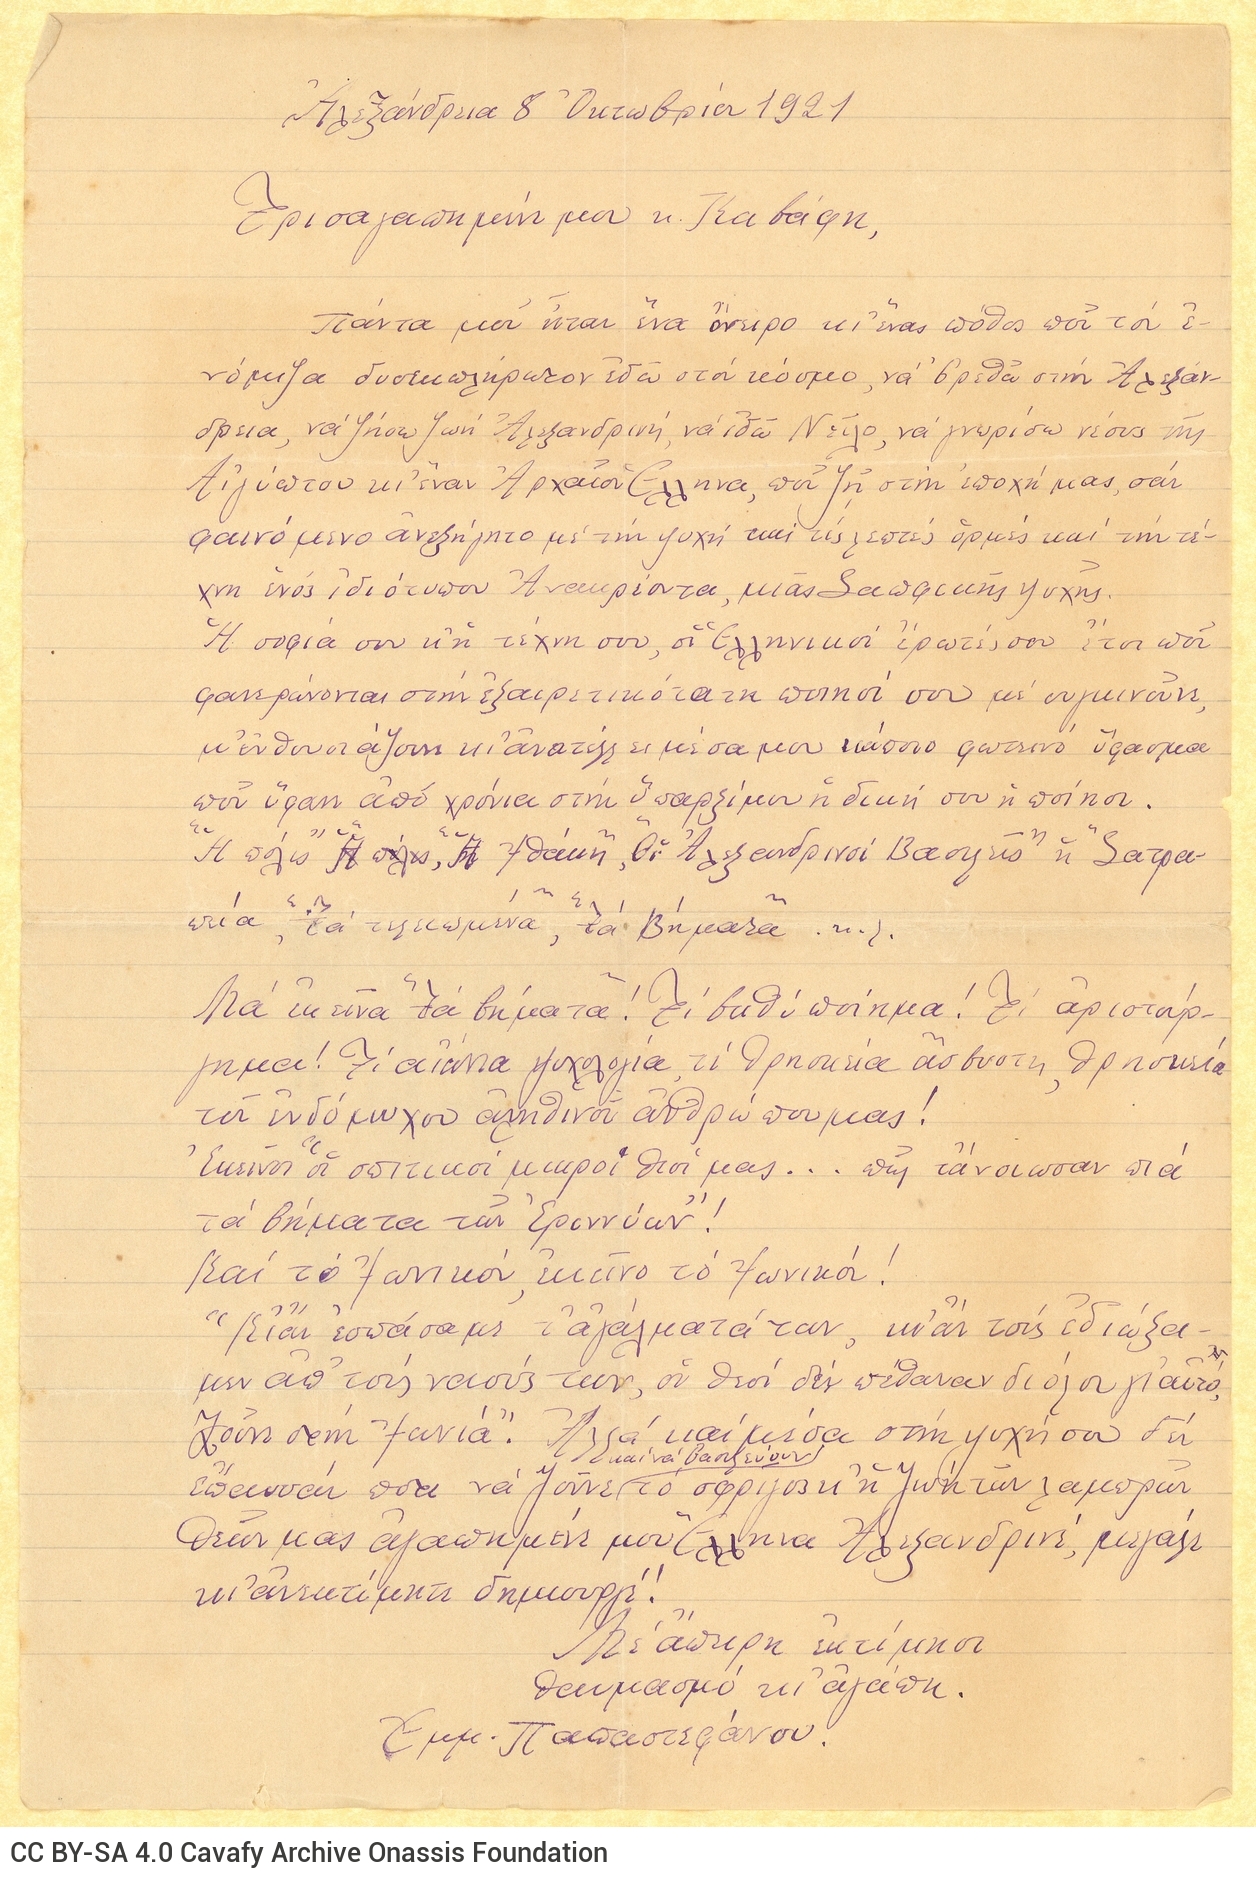 Χειρόγραφη επιστολή του Εμμανουήλ Παπαστεφάνου προς τον Καβάφη, όπο